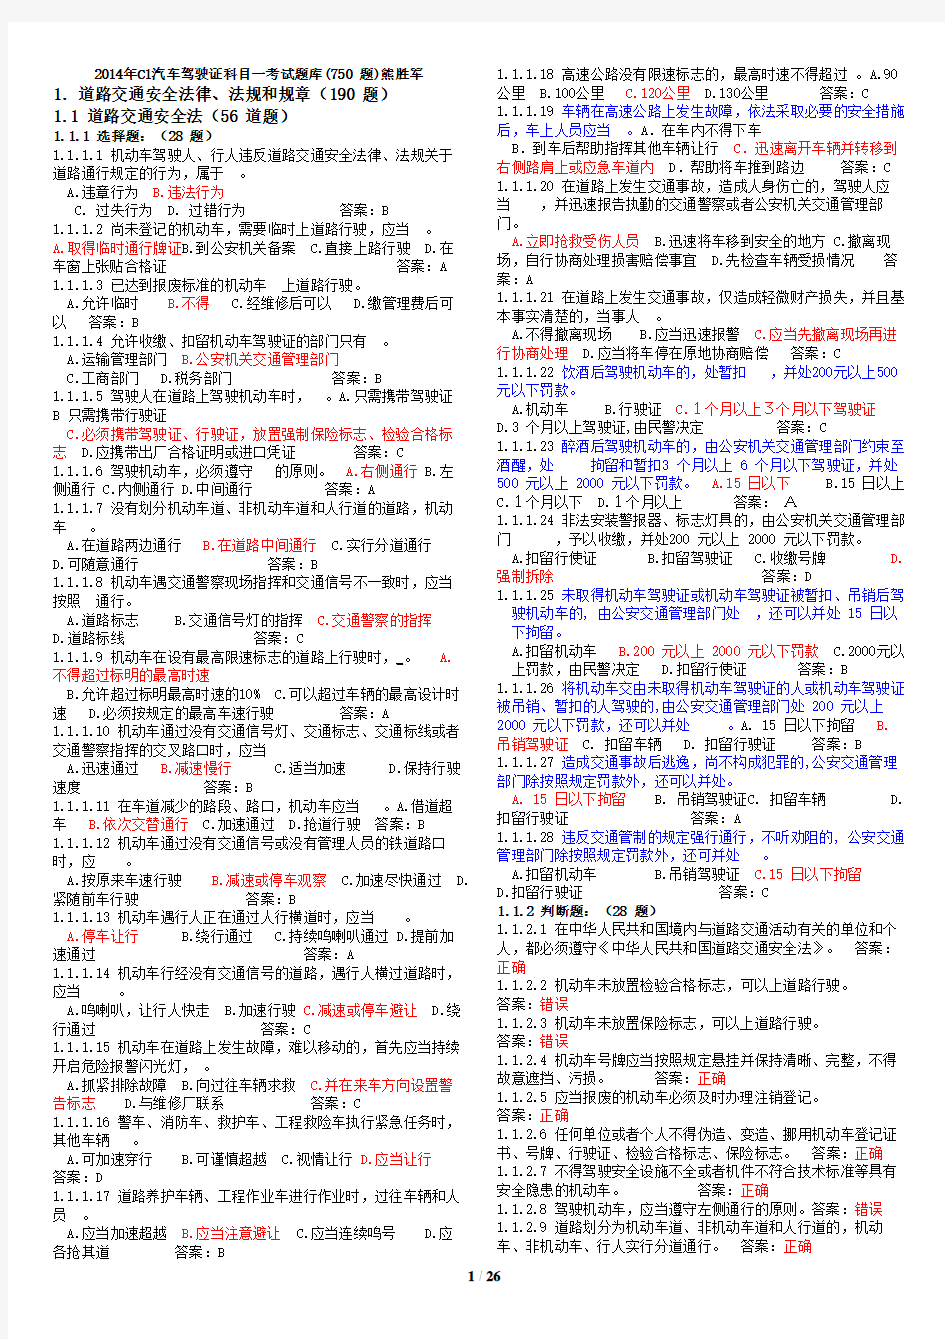 2014年C1汽车驾驶证科目一考试题库750题(打印版)熊胜军